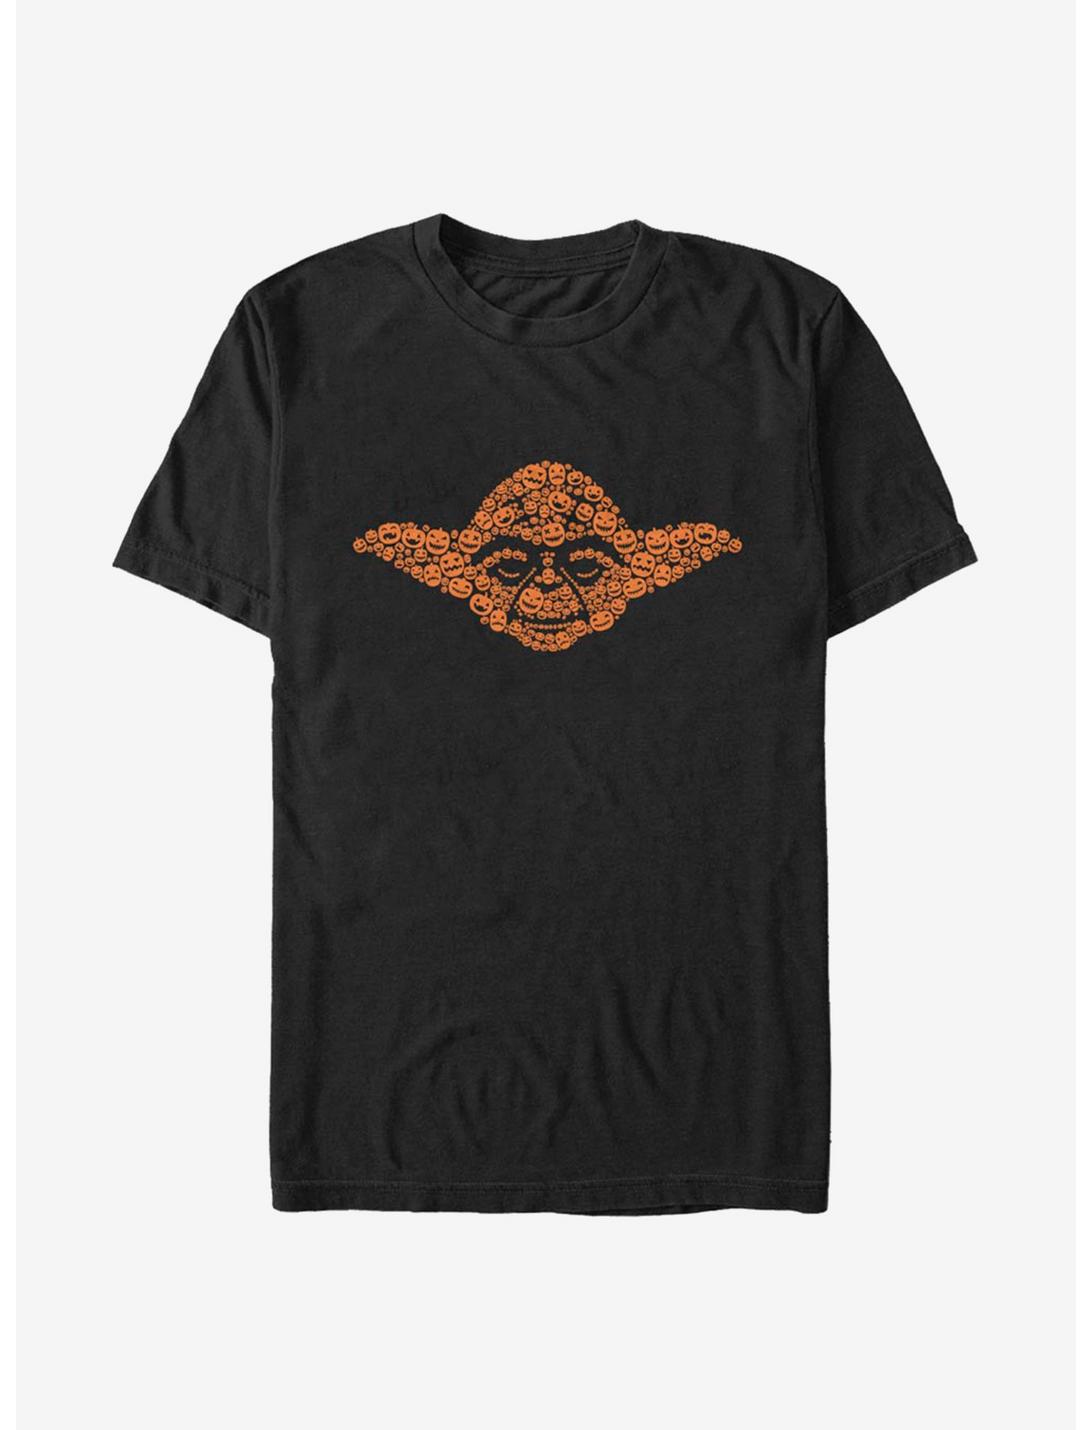 Star Wars Yoda Jackolanterns T-Shirt, BLACK, hi-res